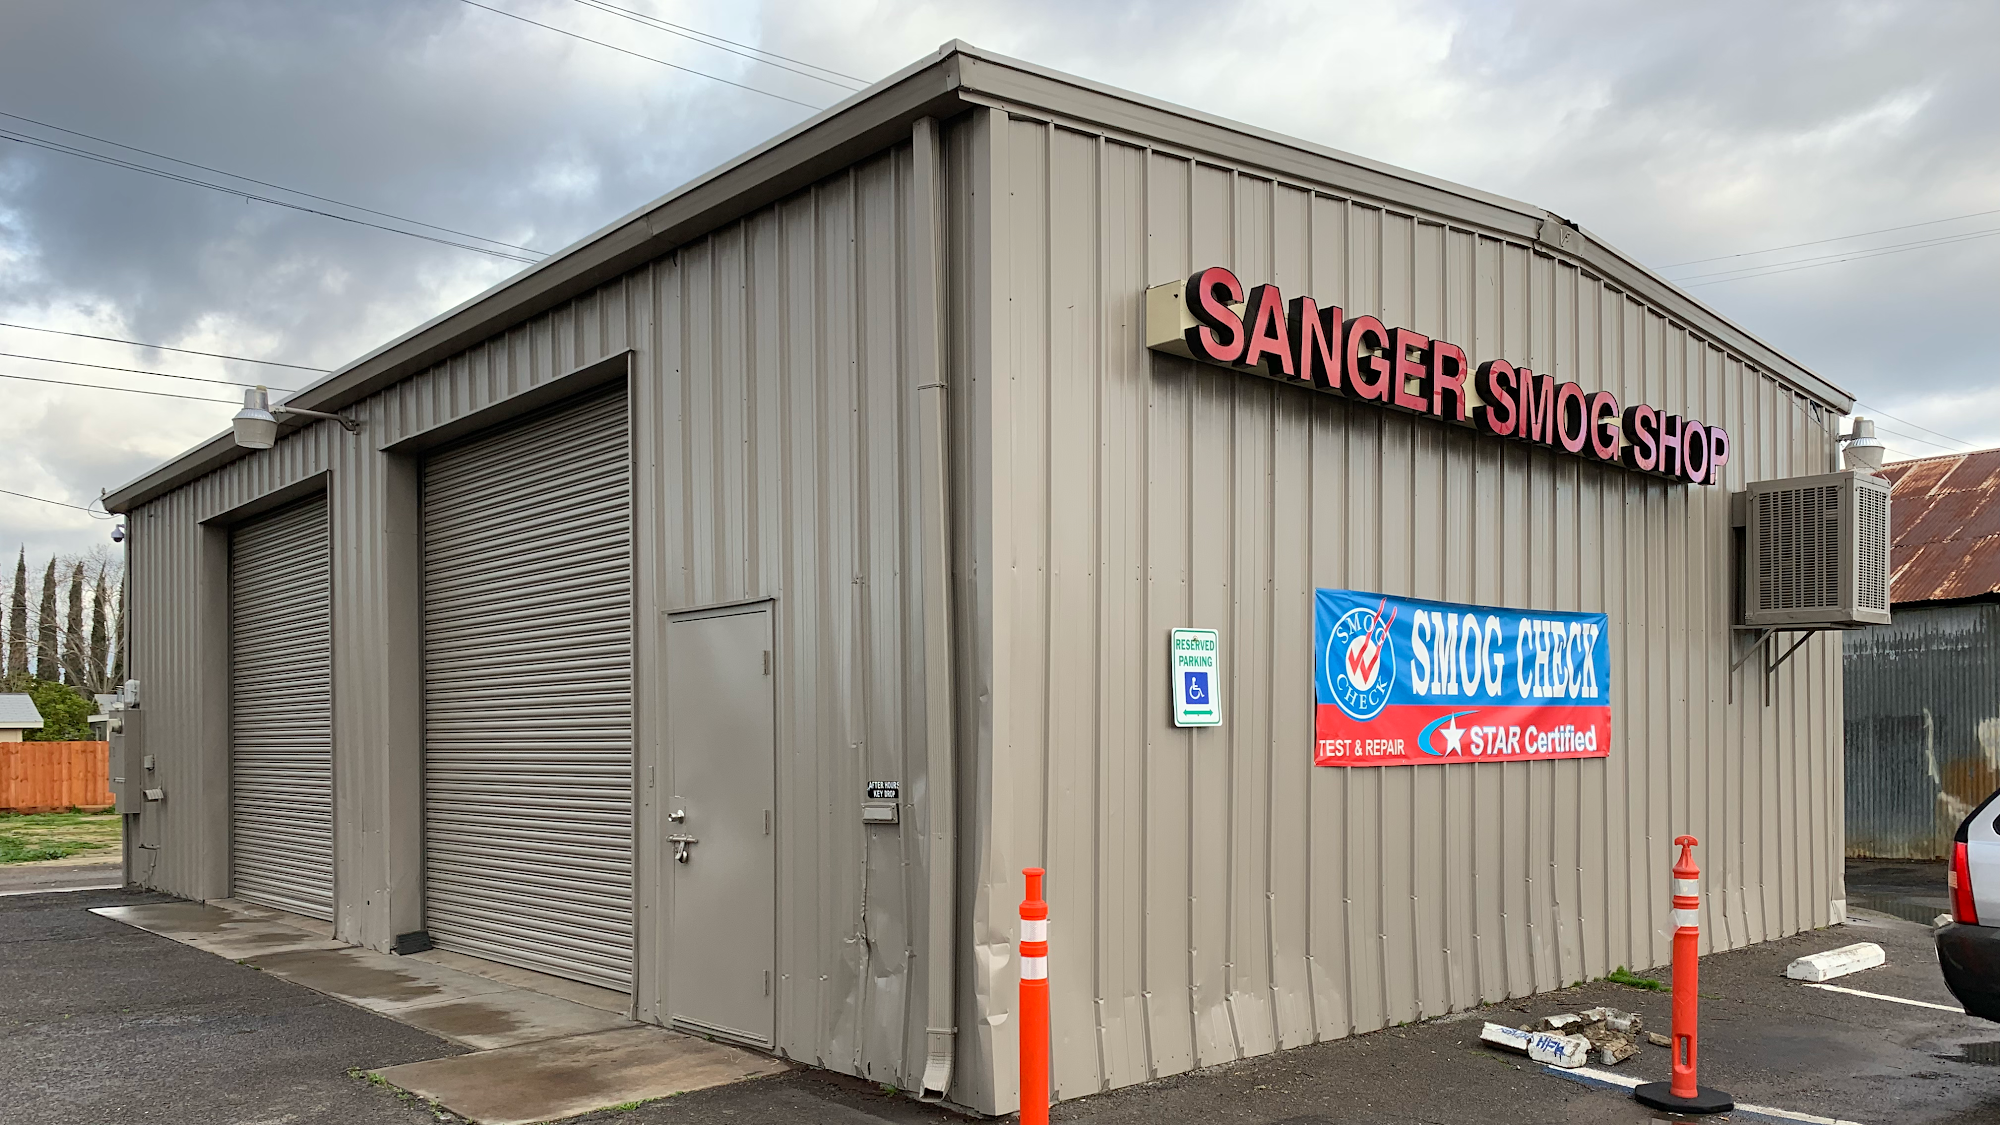 Sanger Smog And Repair LLC